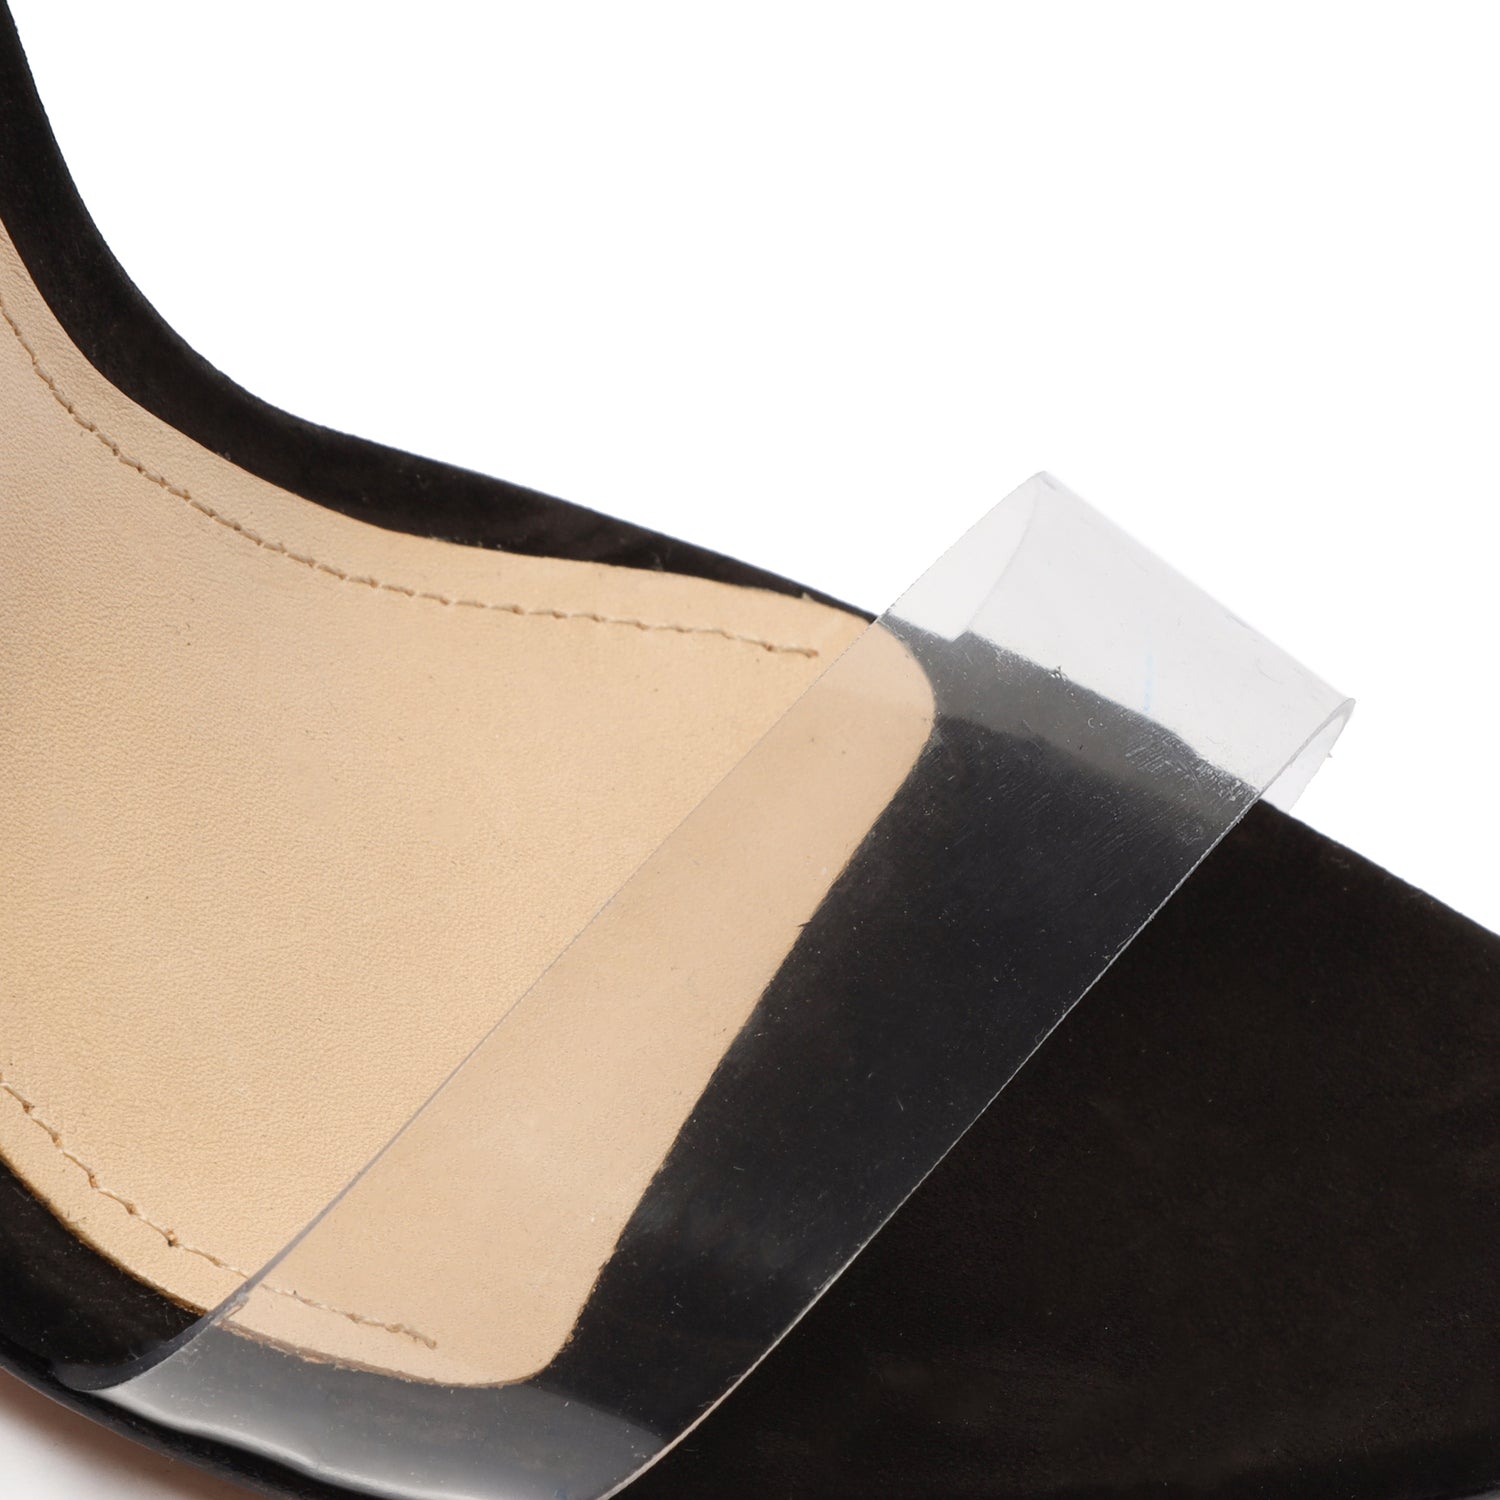 New Look Silence Gold Detail Heeled Shoes at asos.com | Taças, Sapatos  elegantes, Como andar de salto